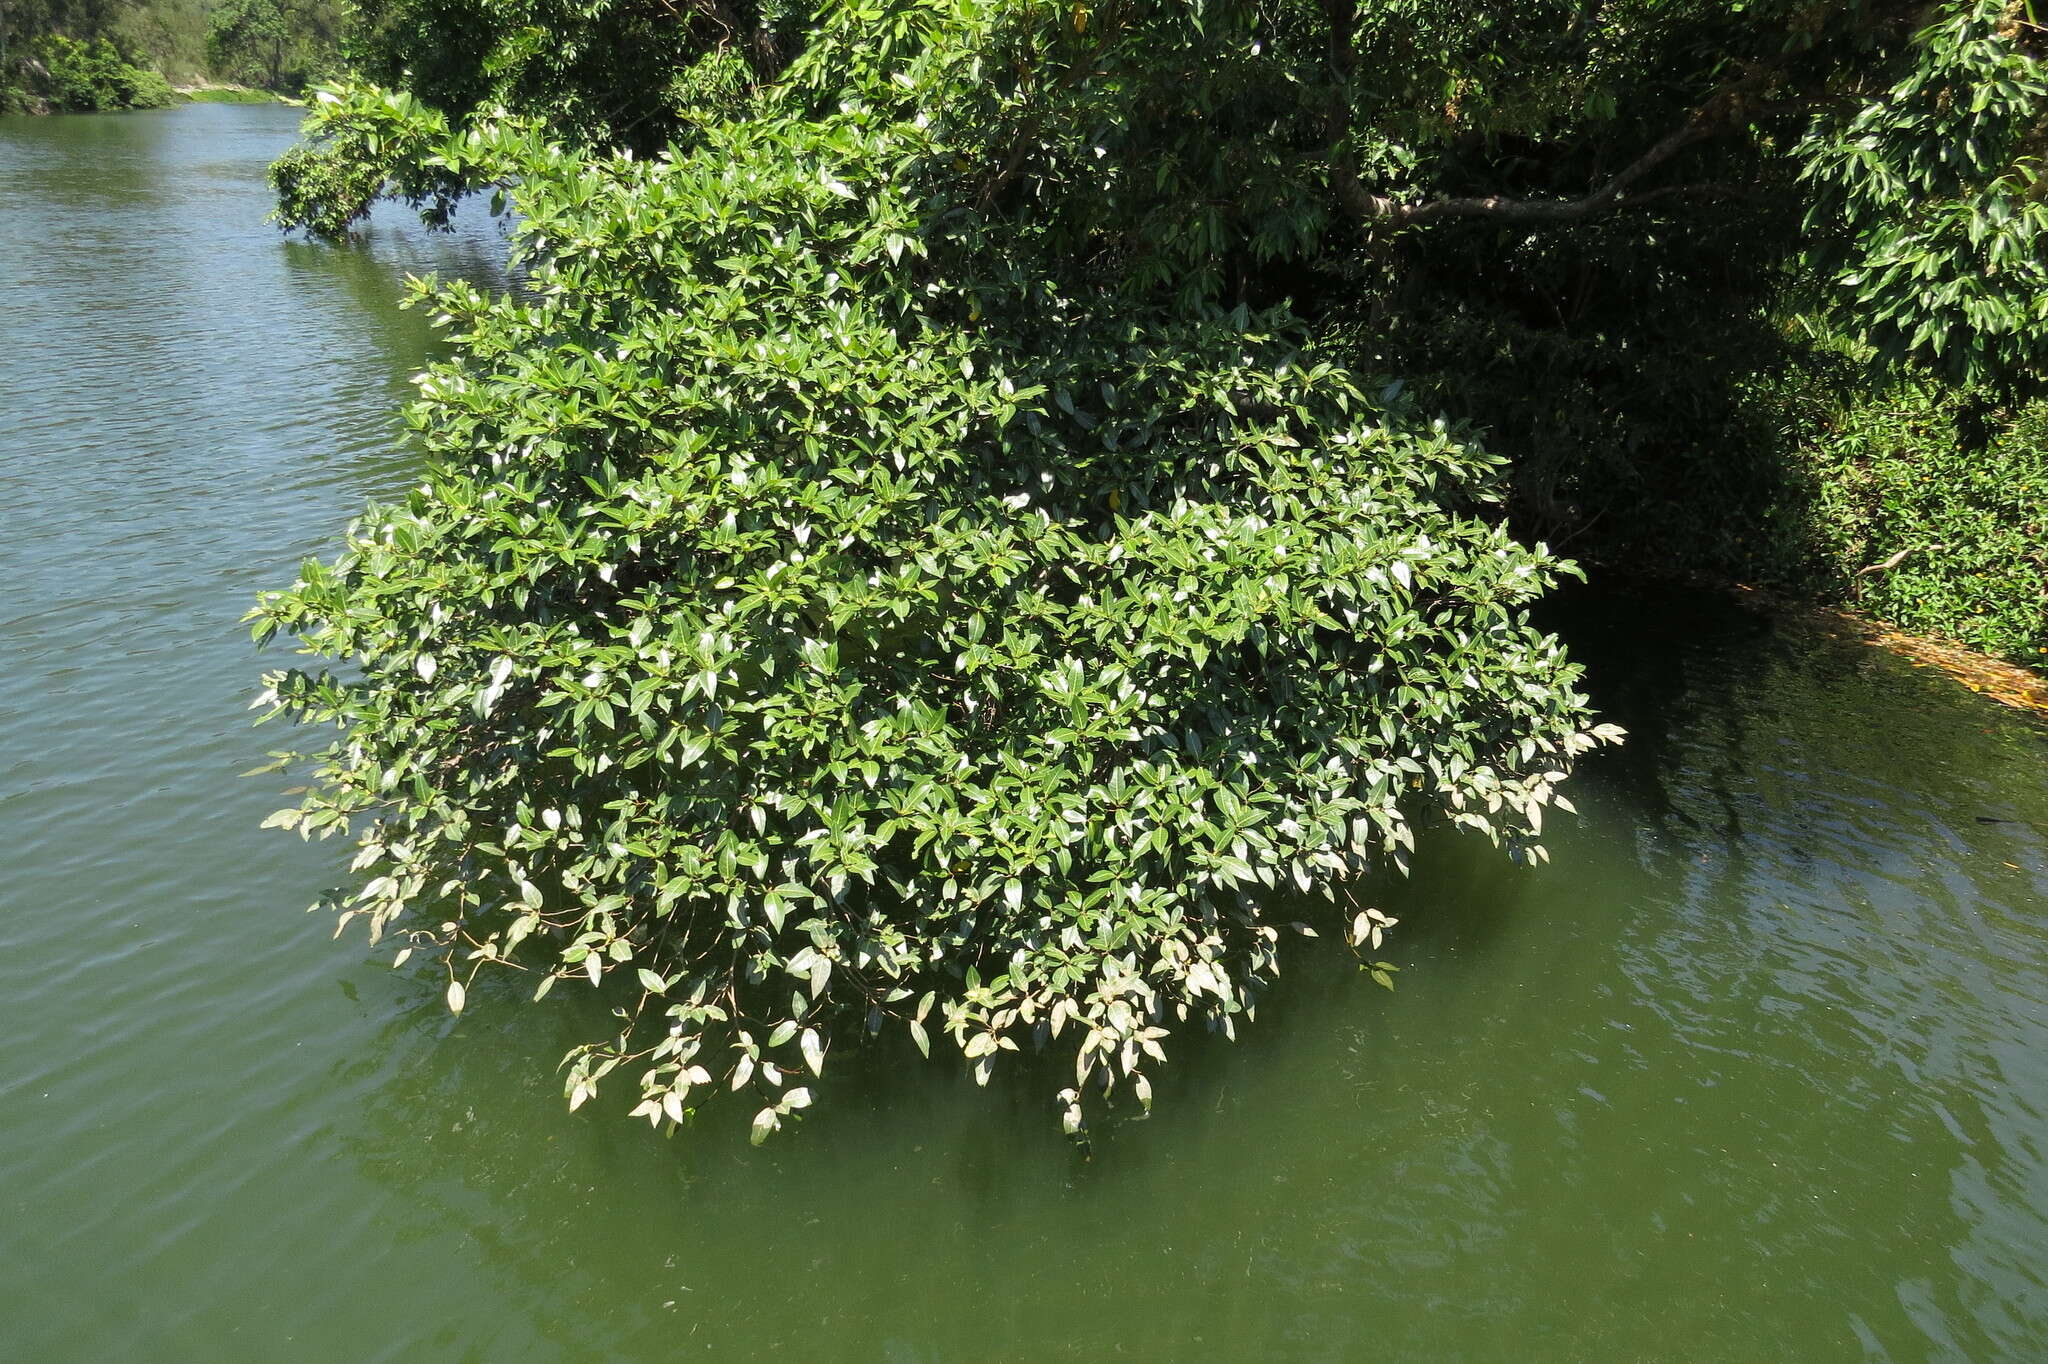 Image of Ficus adenosperma Miq.